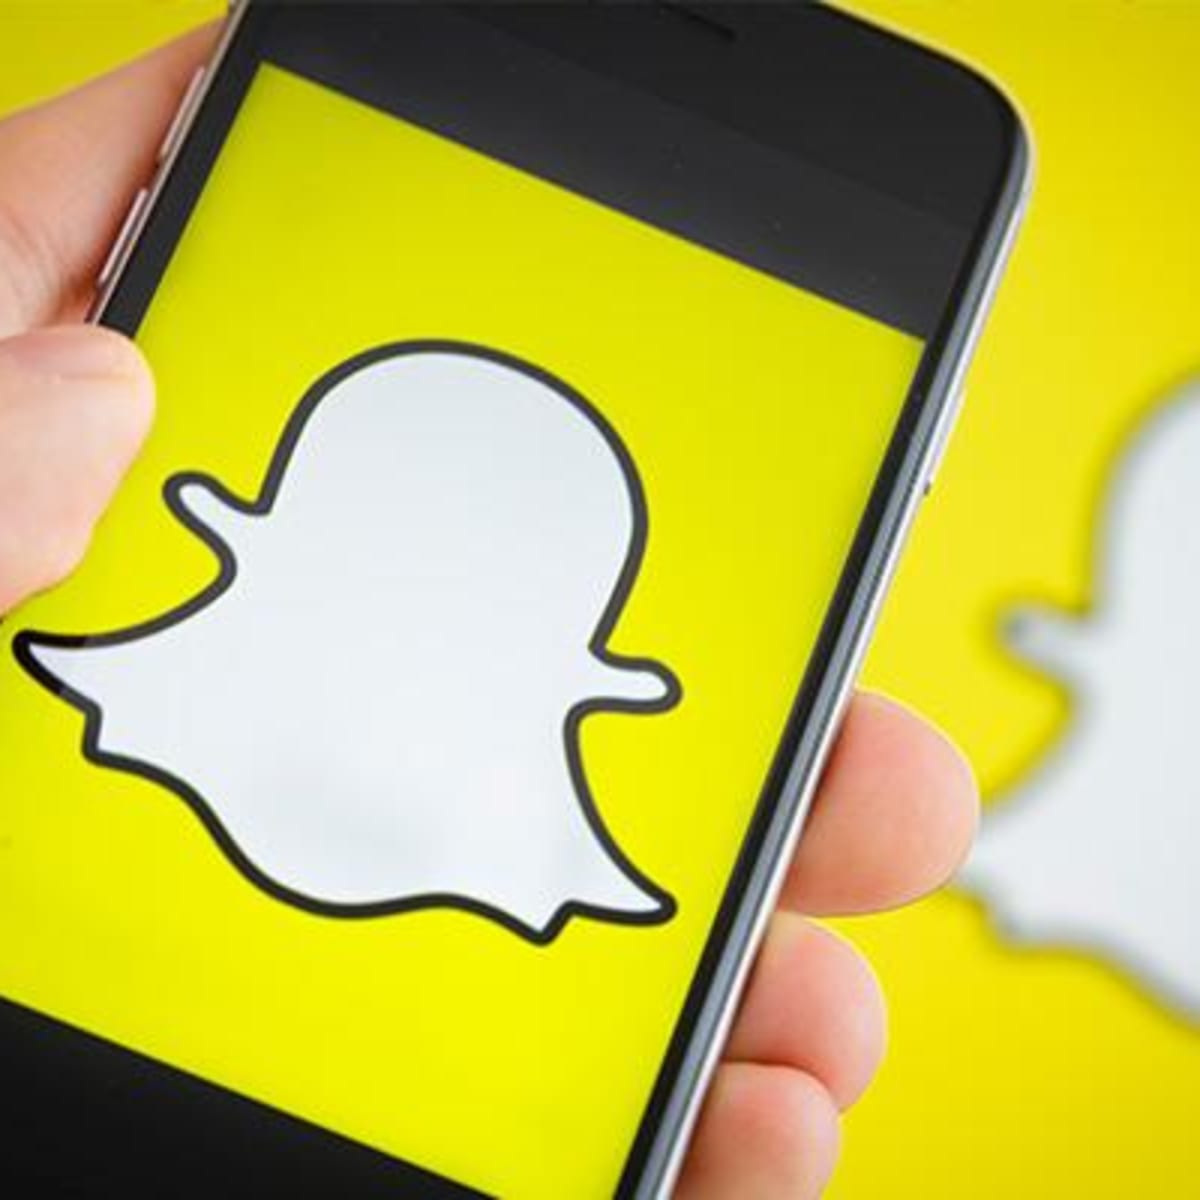 Layanan Berlangganan Snapchat Capai 5 Juta Pengguna